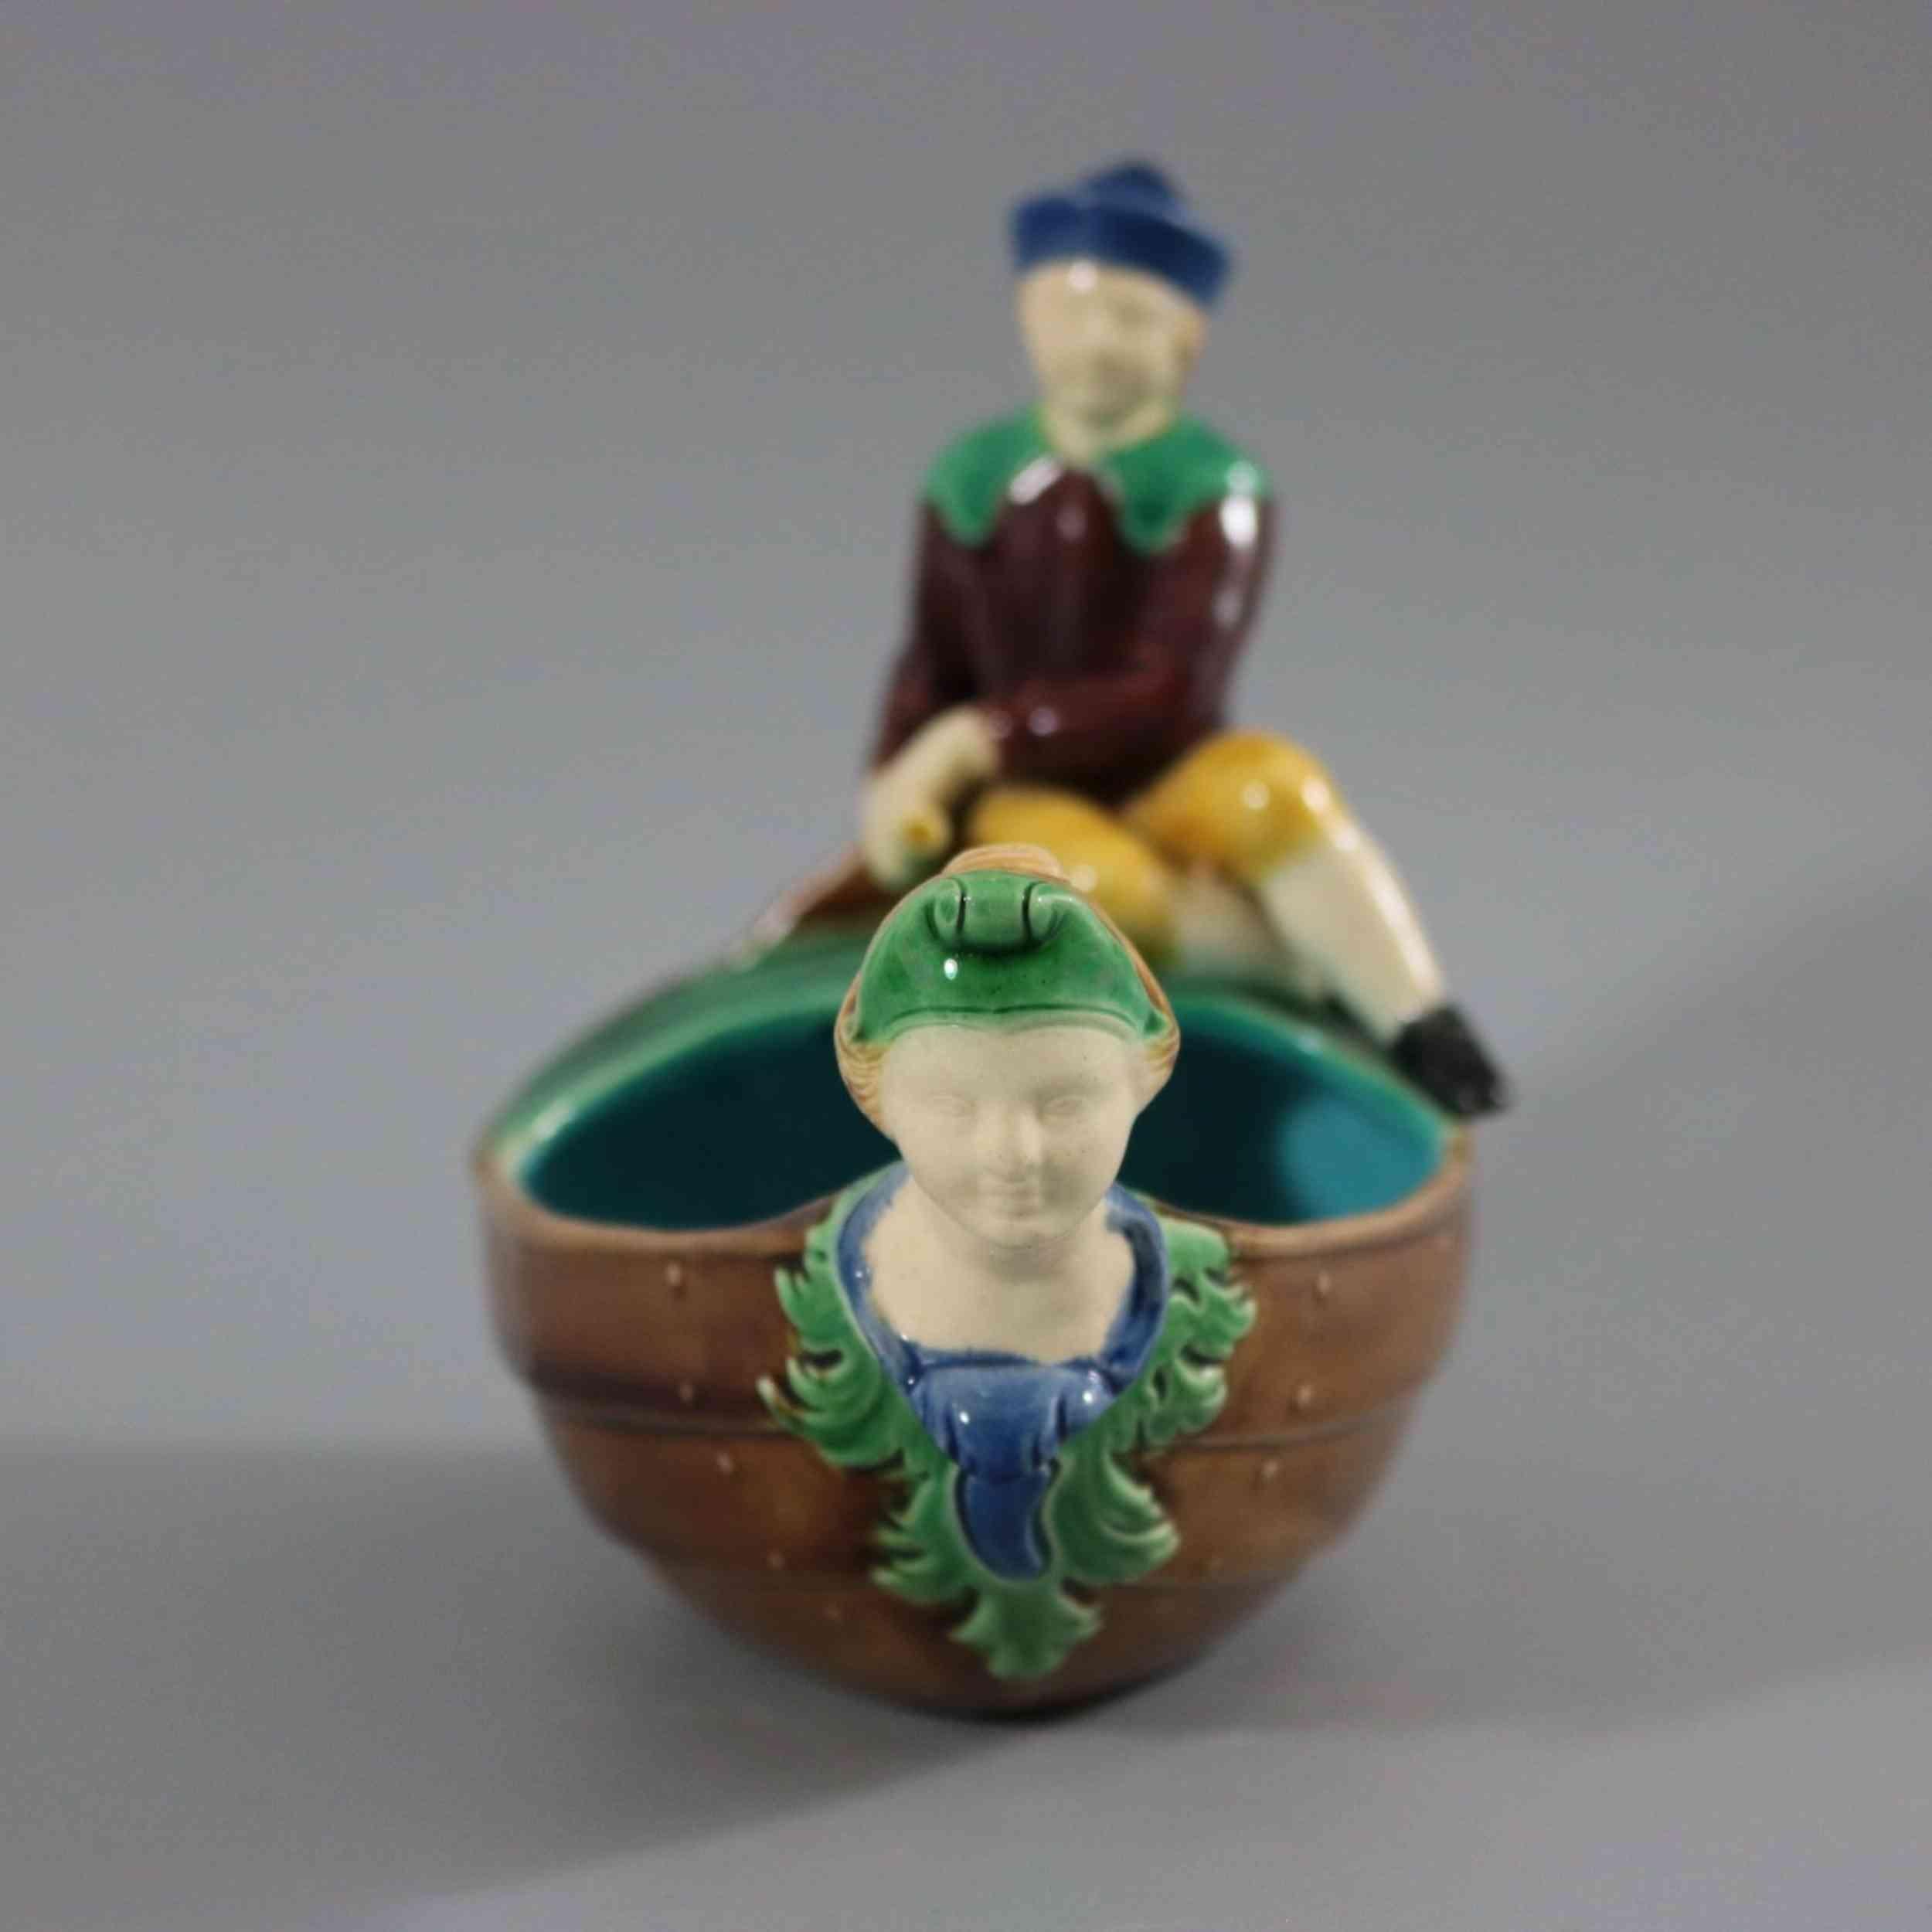 Minton-Majolika-Schale mit einem Boot, auf dessen Rücken ein Junge sitzt, der das Ruder steuert. Eine weibliche Büste als Galionsfigur an der Vorderseite des Bootes. Färbung: braun, grün, türkis, sind vorherrschend. Das Stück trägt Herstellermarken